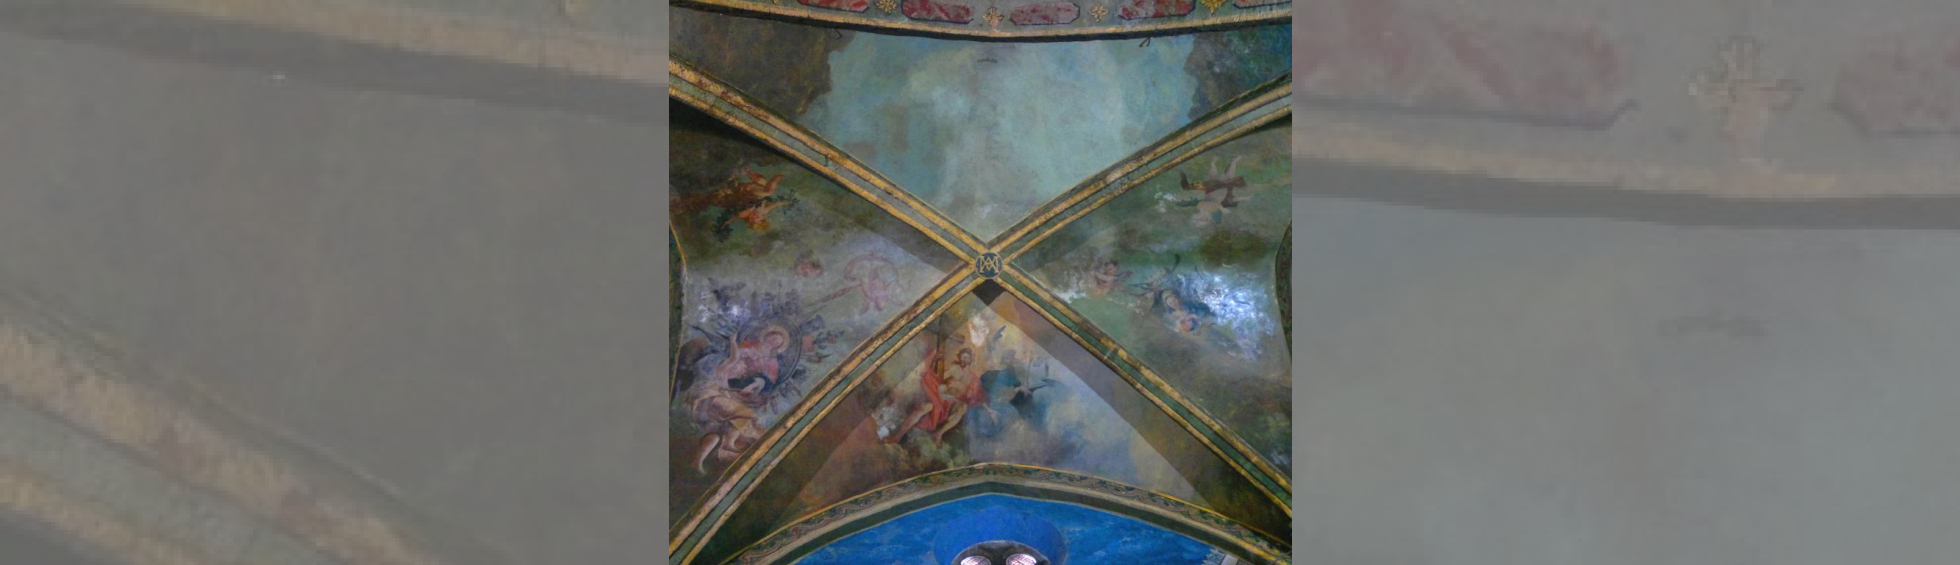 Plafond de la chapelle ND des Anges: Christ et Sainte Vierge entorués d'anges